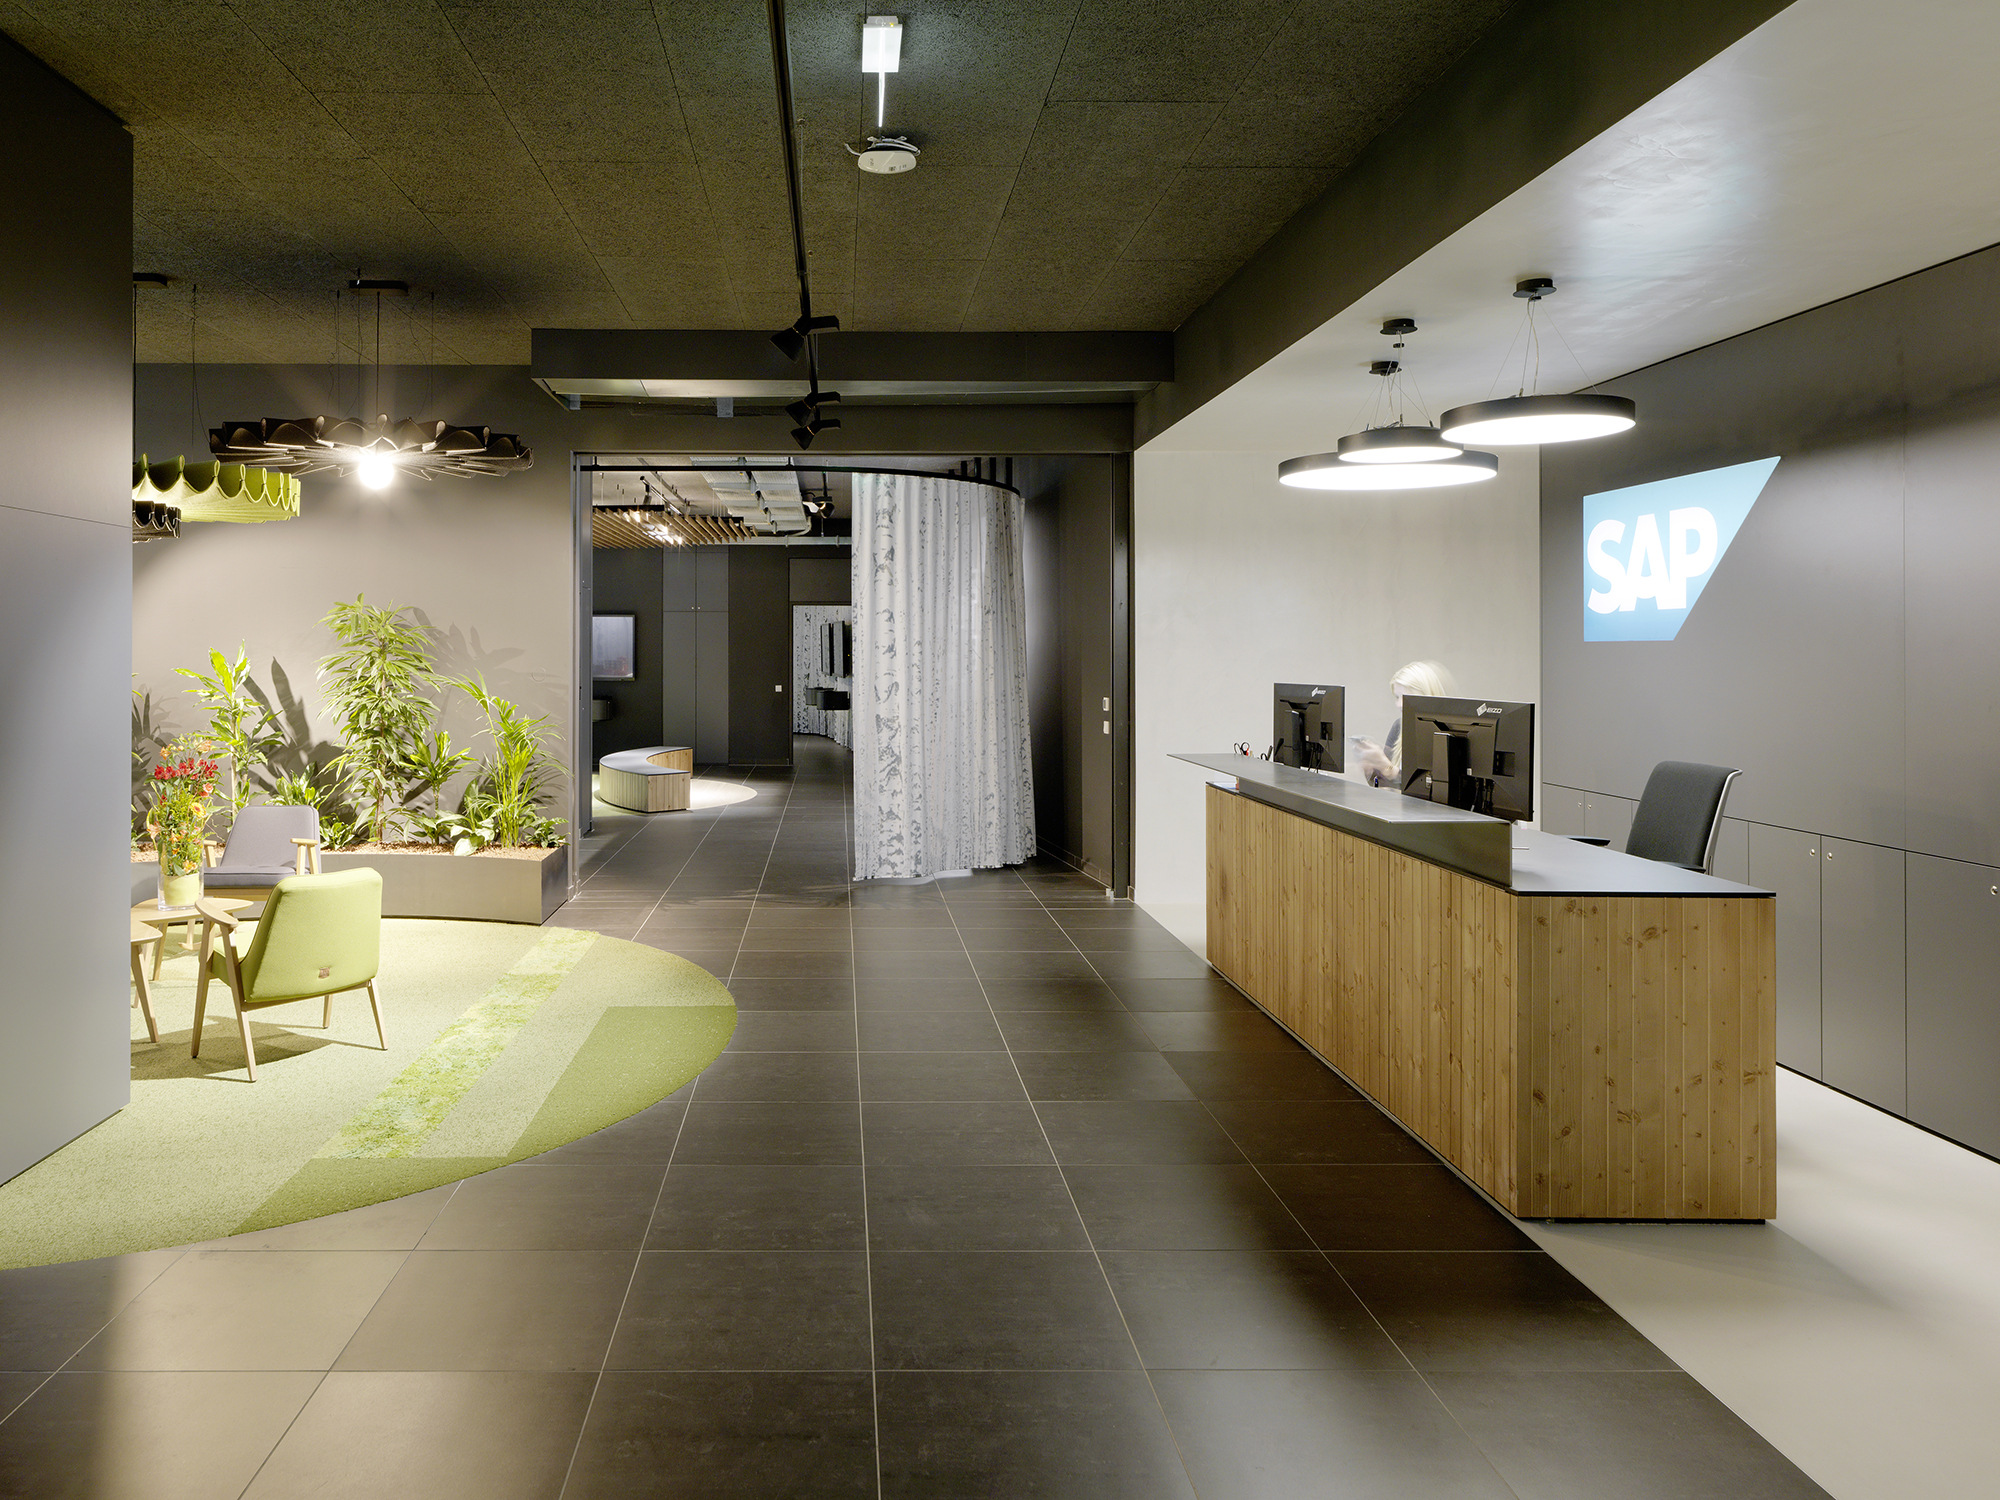 SAPエスタライヒ支社のオフィス - オーストリア, ウィーンの受付/エントランススペース